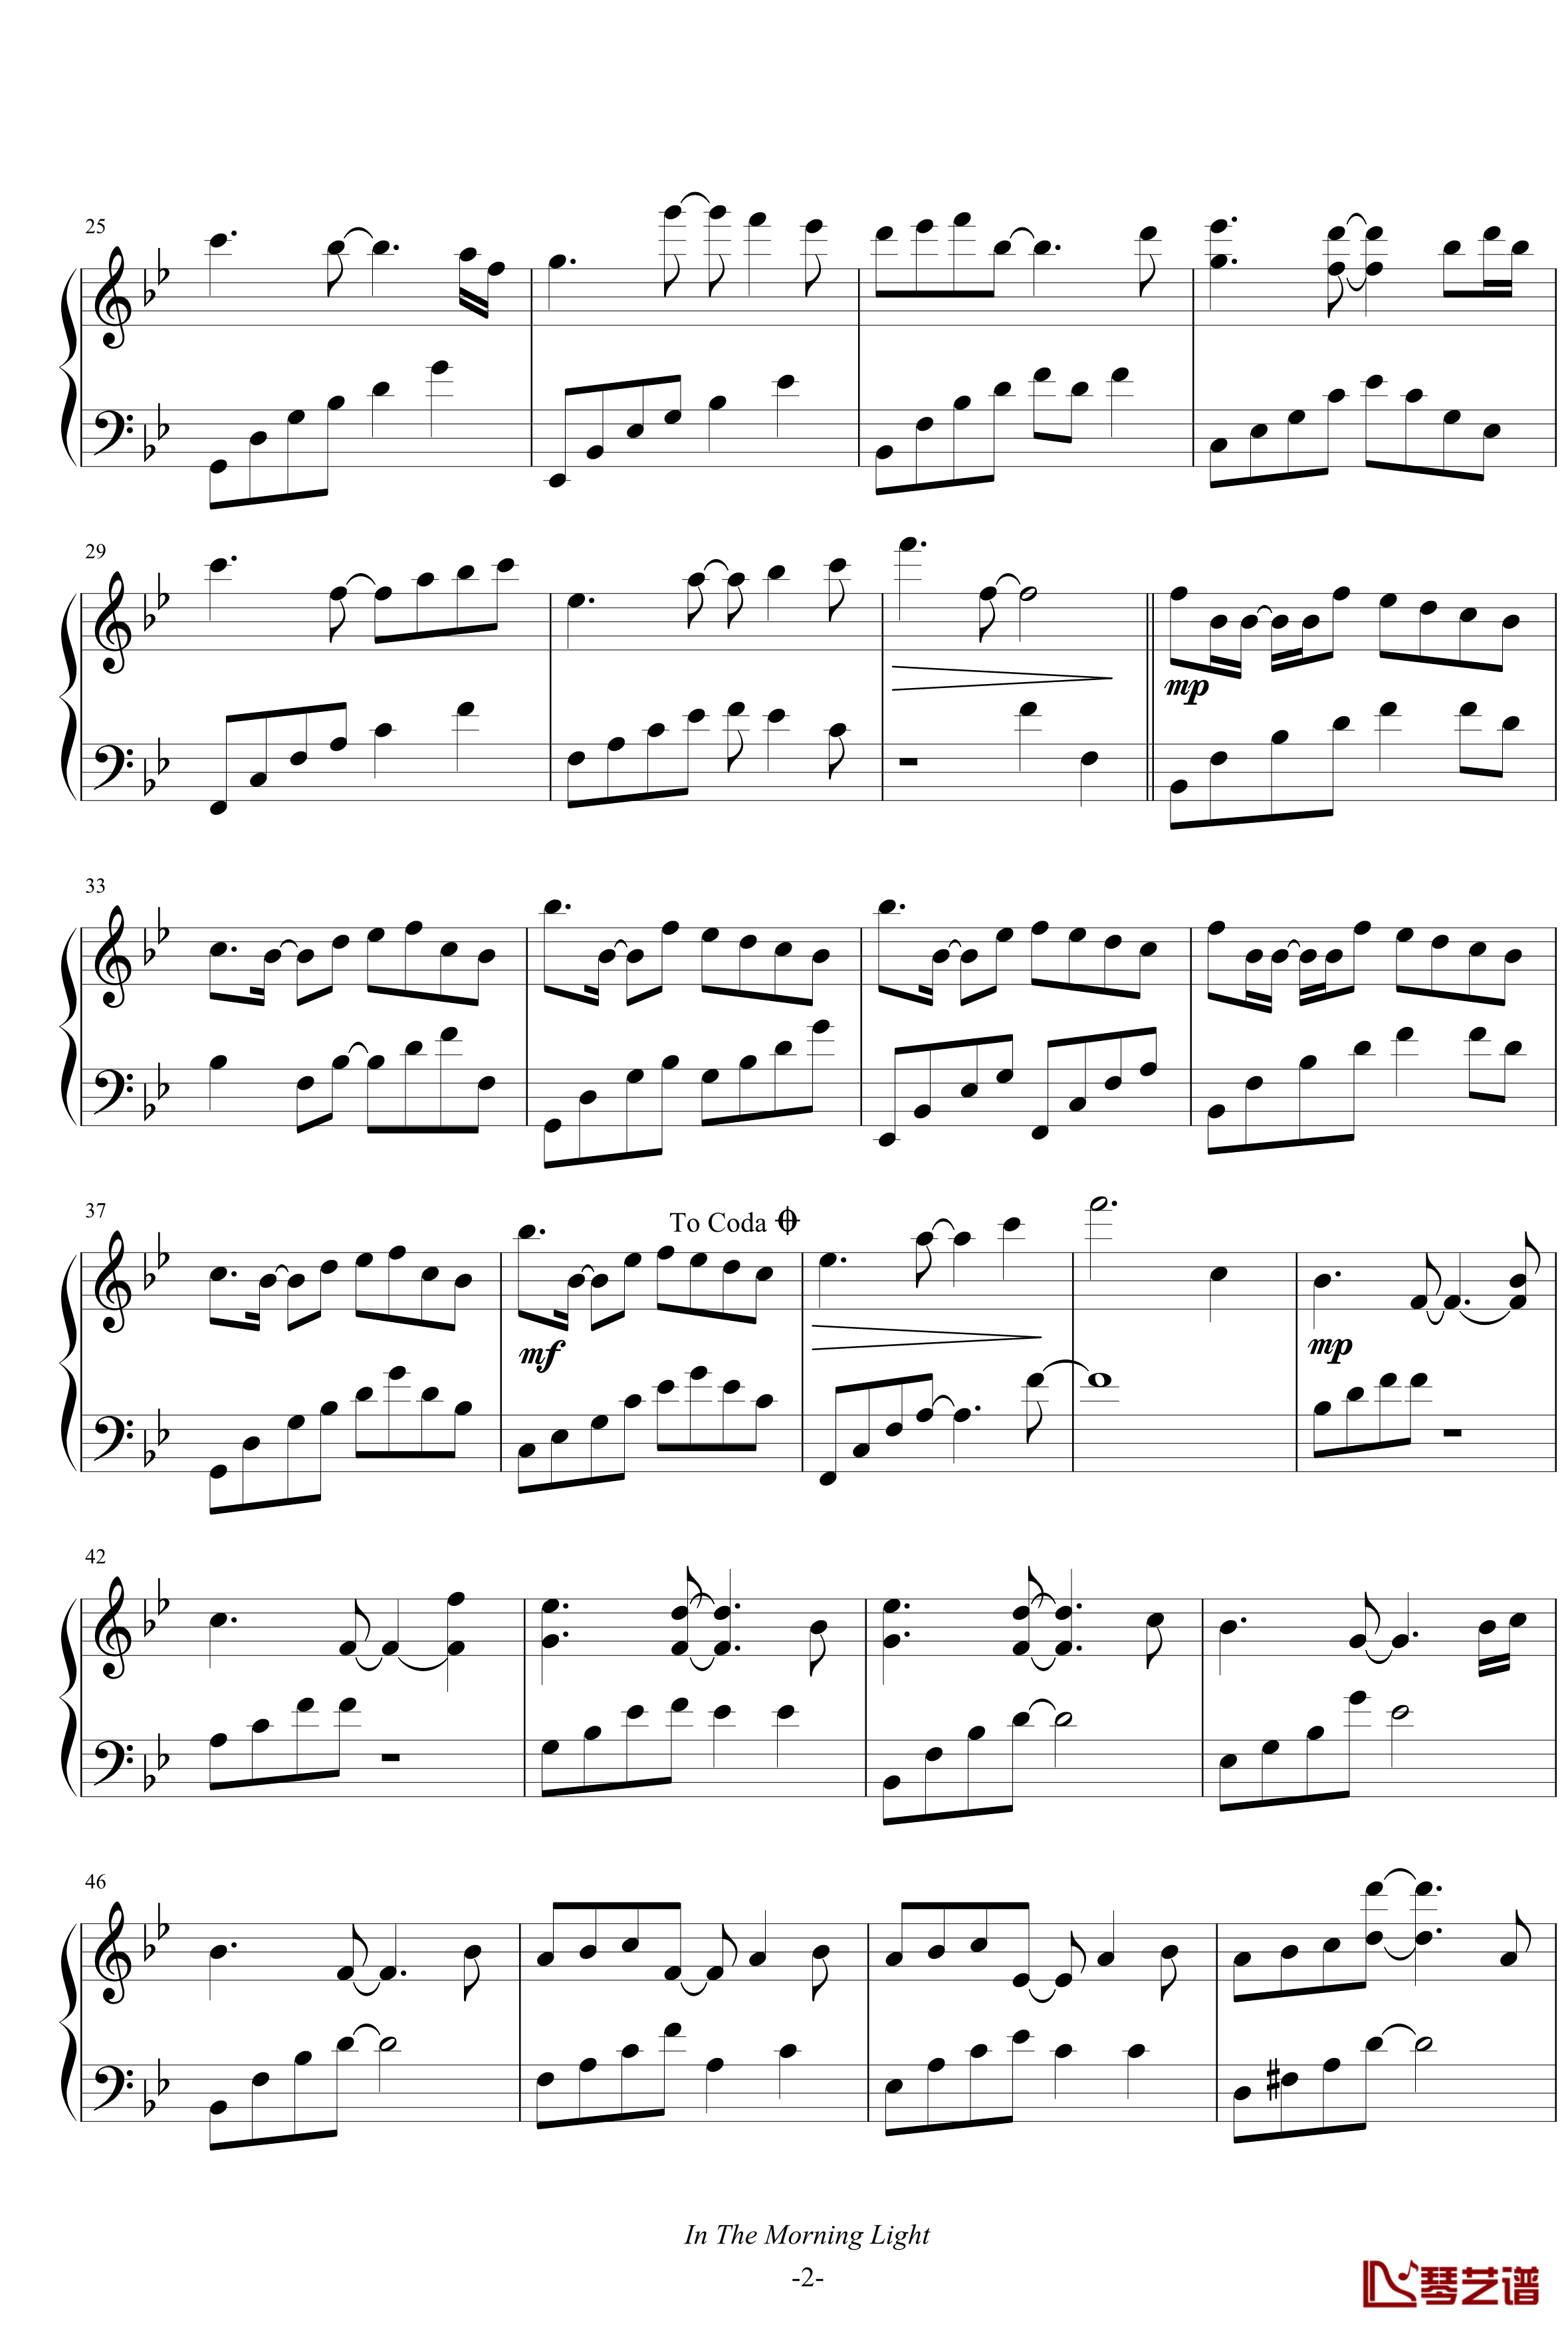 In the morning light钢琴谱-B-flat major-雅尼2